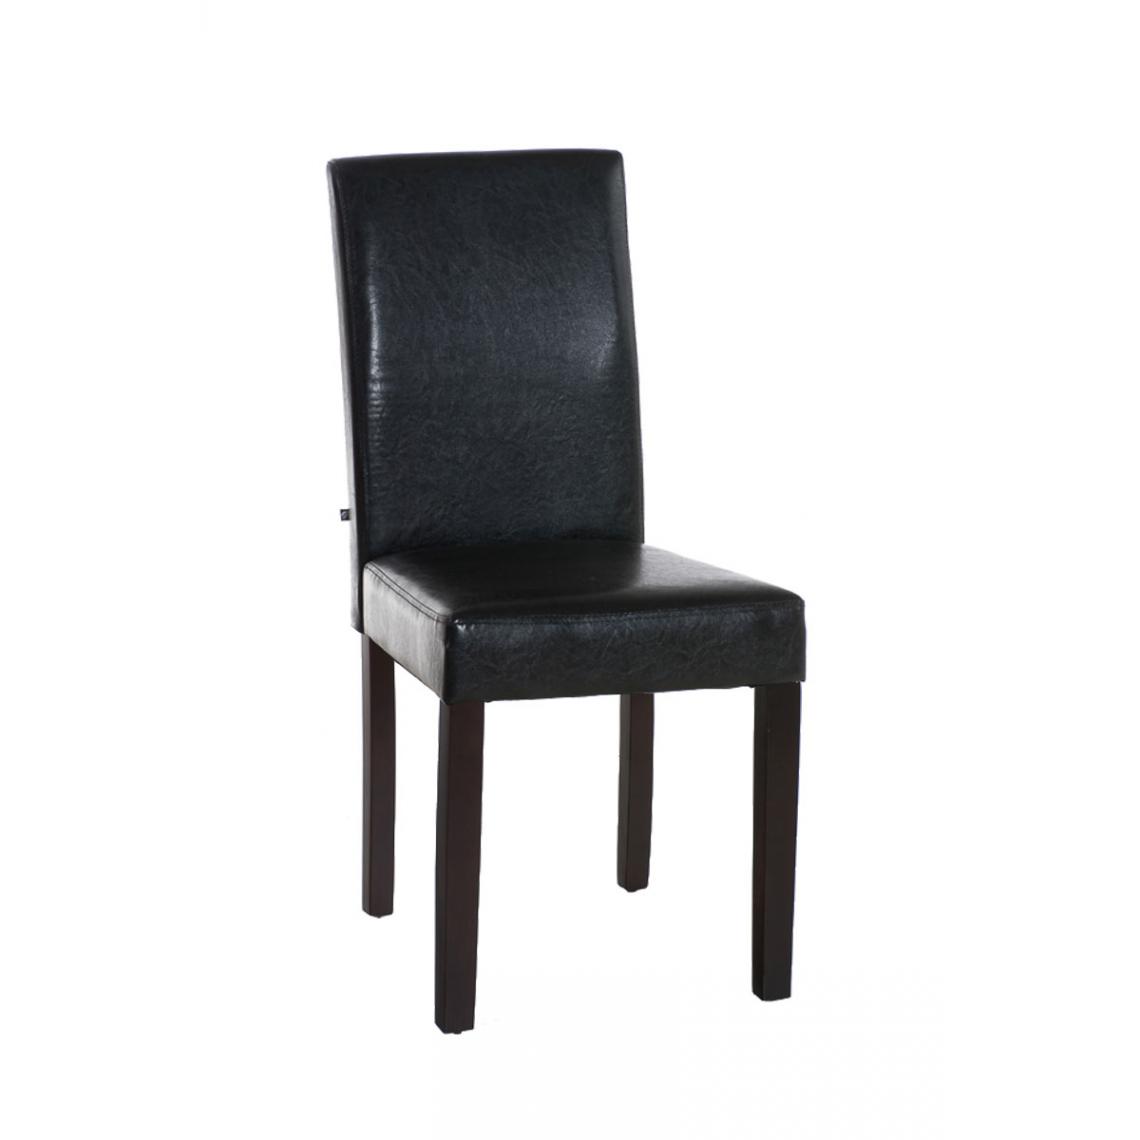 Icaverne - Moderne Chaise de salle à manger categorie Rabat couleur cappuccino / marron - Chaises